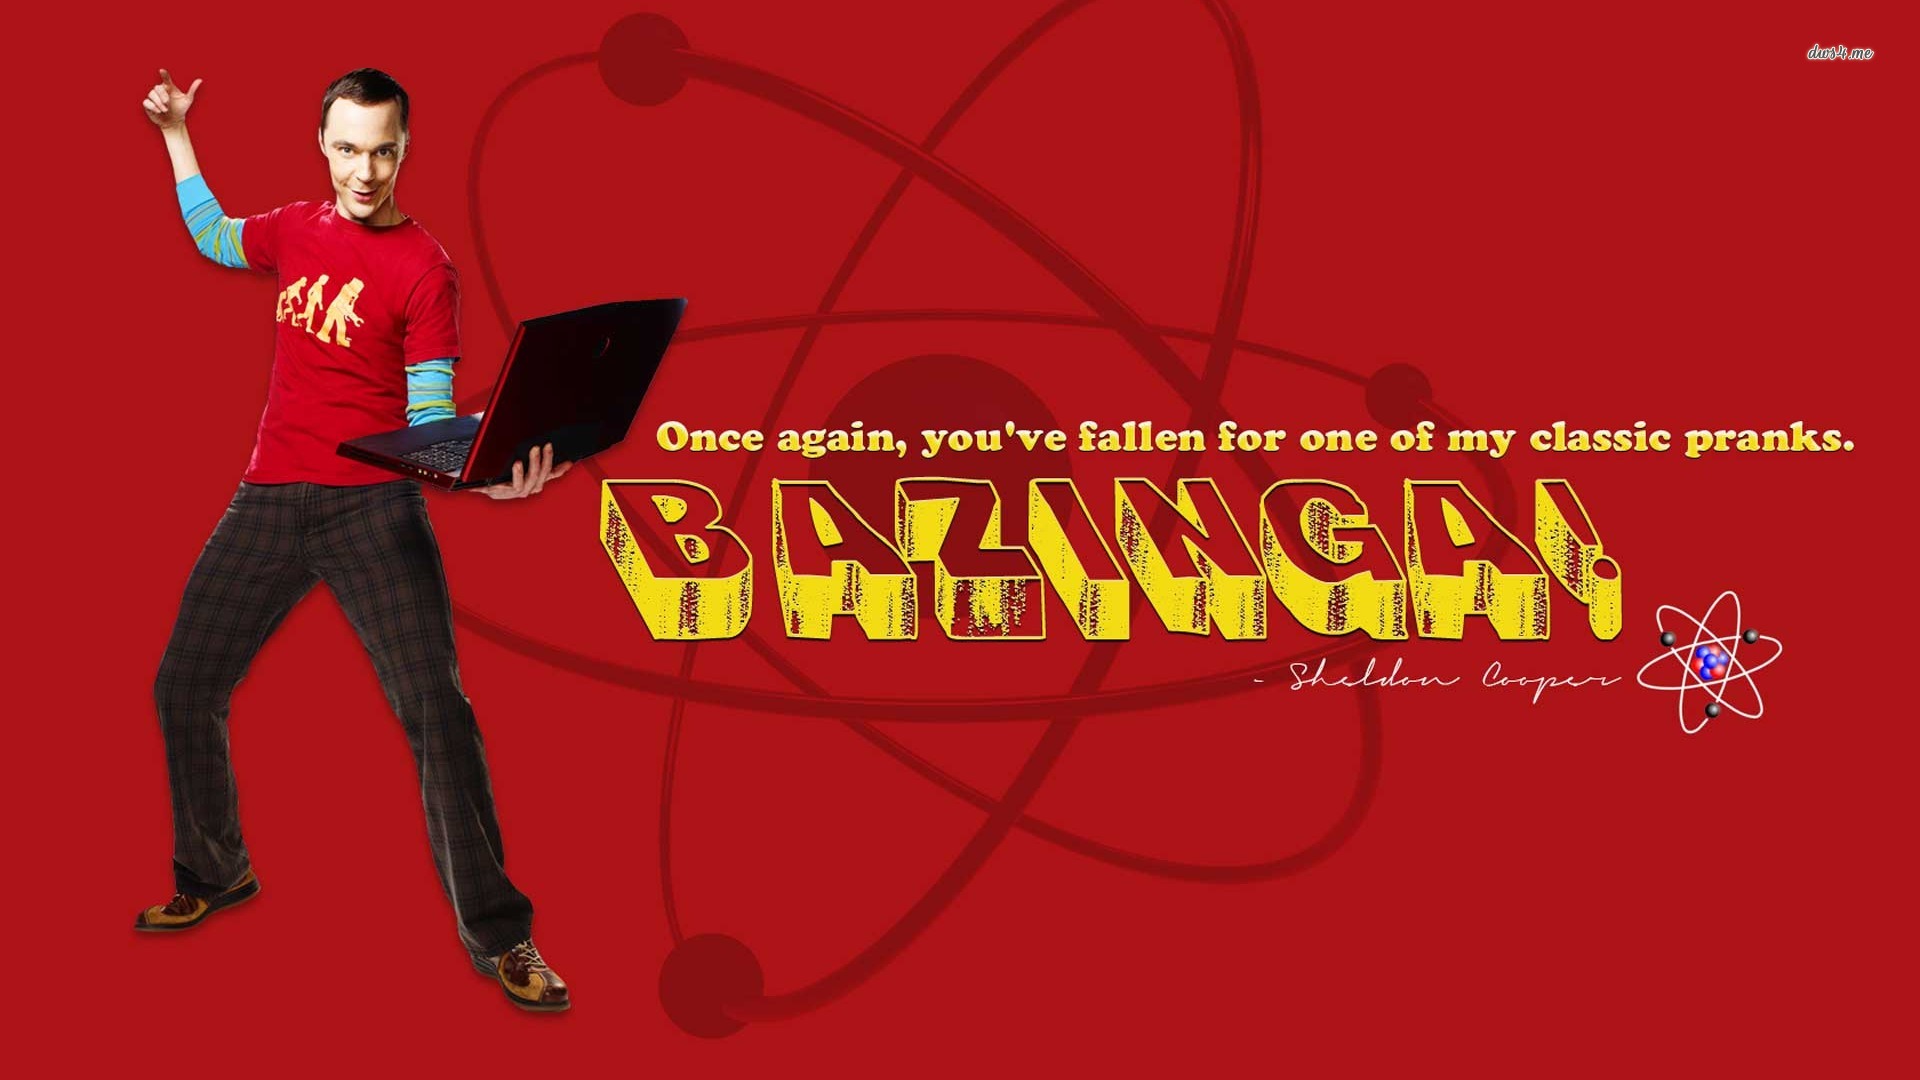 Bazinga HD download for free